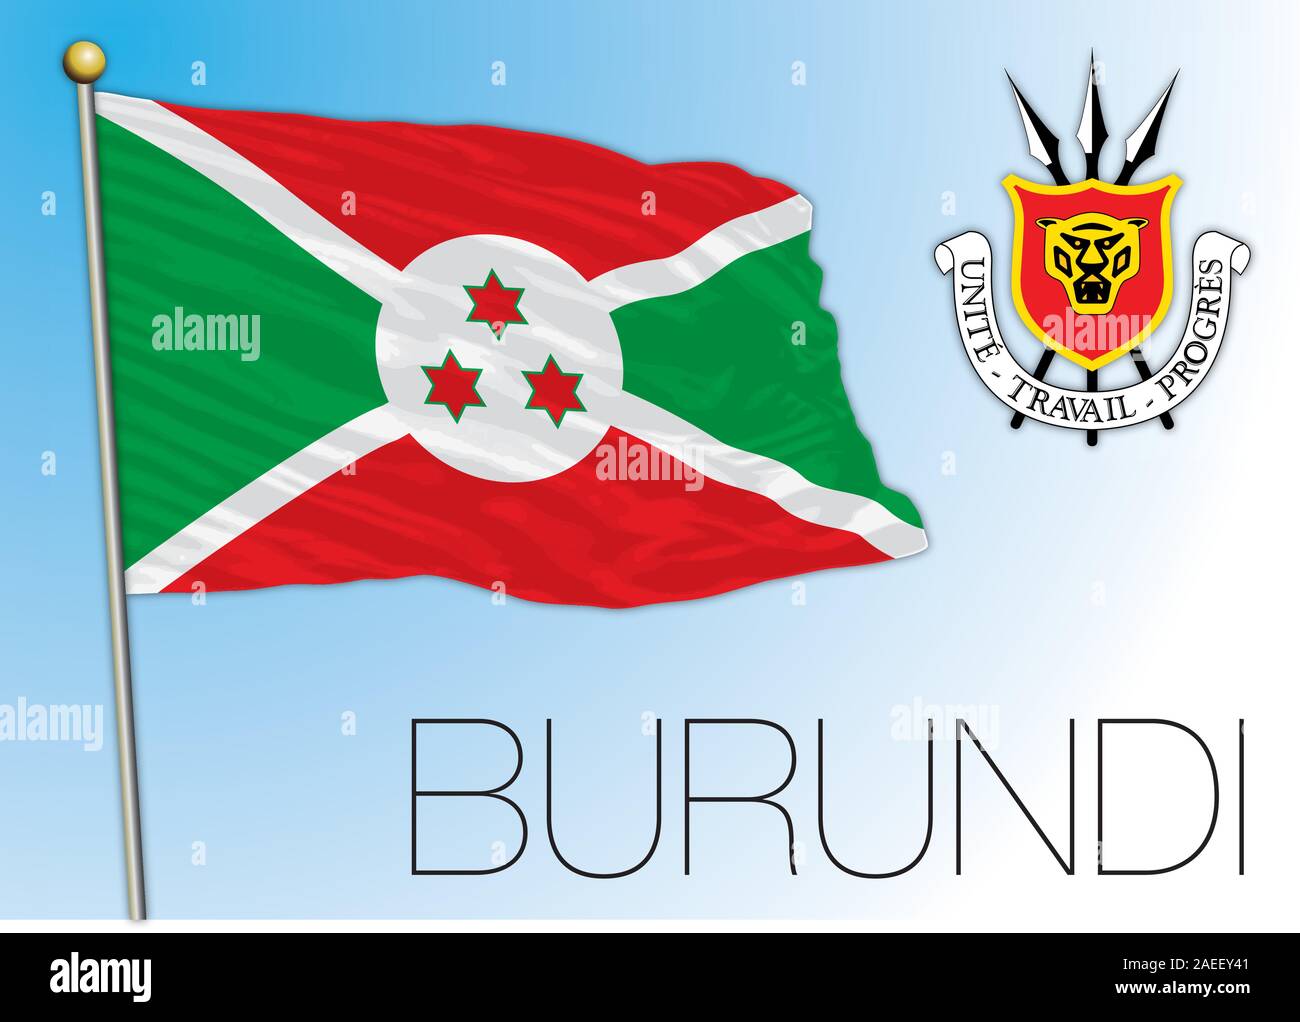 Burundi offizielle Nationalflagge, die afrikanische Länder sind, Vector Illustration Stock Vektor